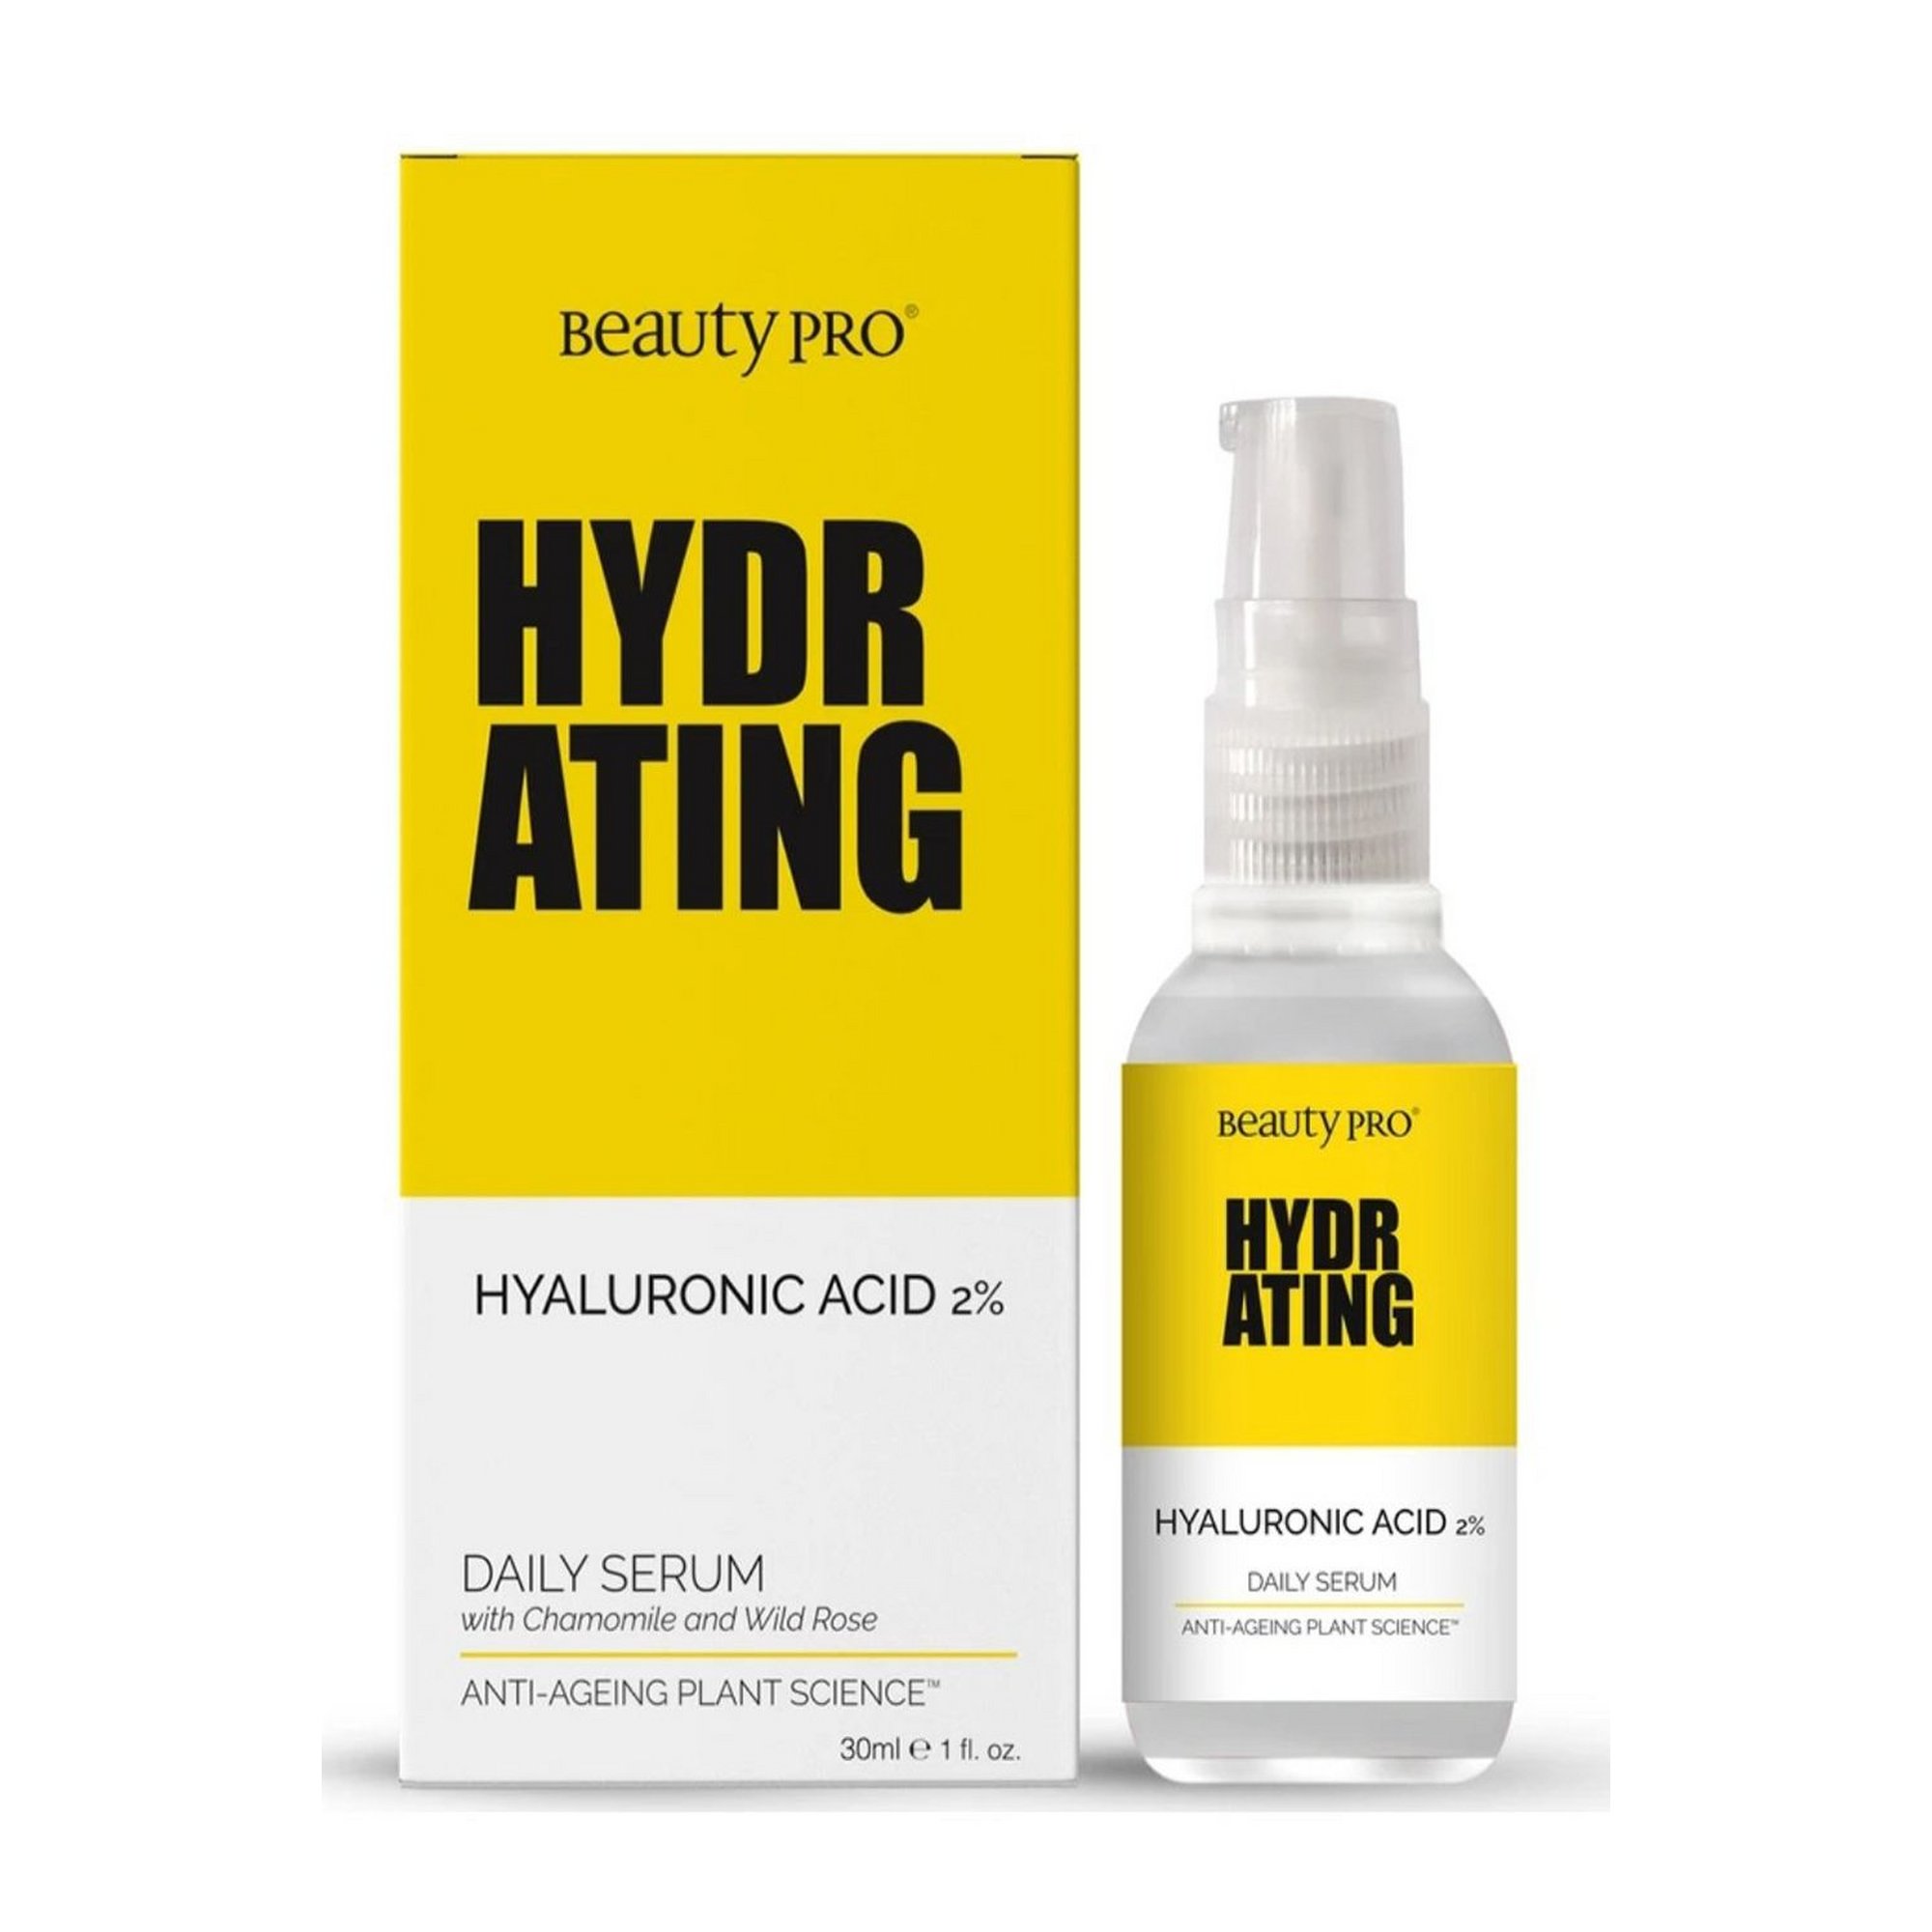 Beauty Pro BeautyPro Hydrating Hyaluronic Acid 30ml Daily Serum